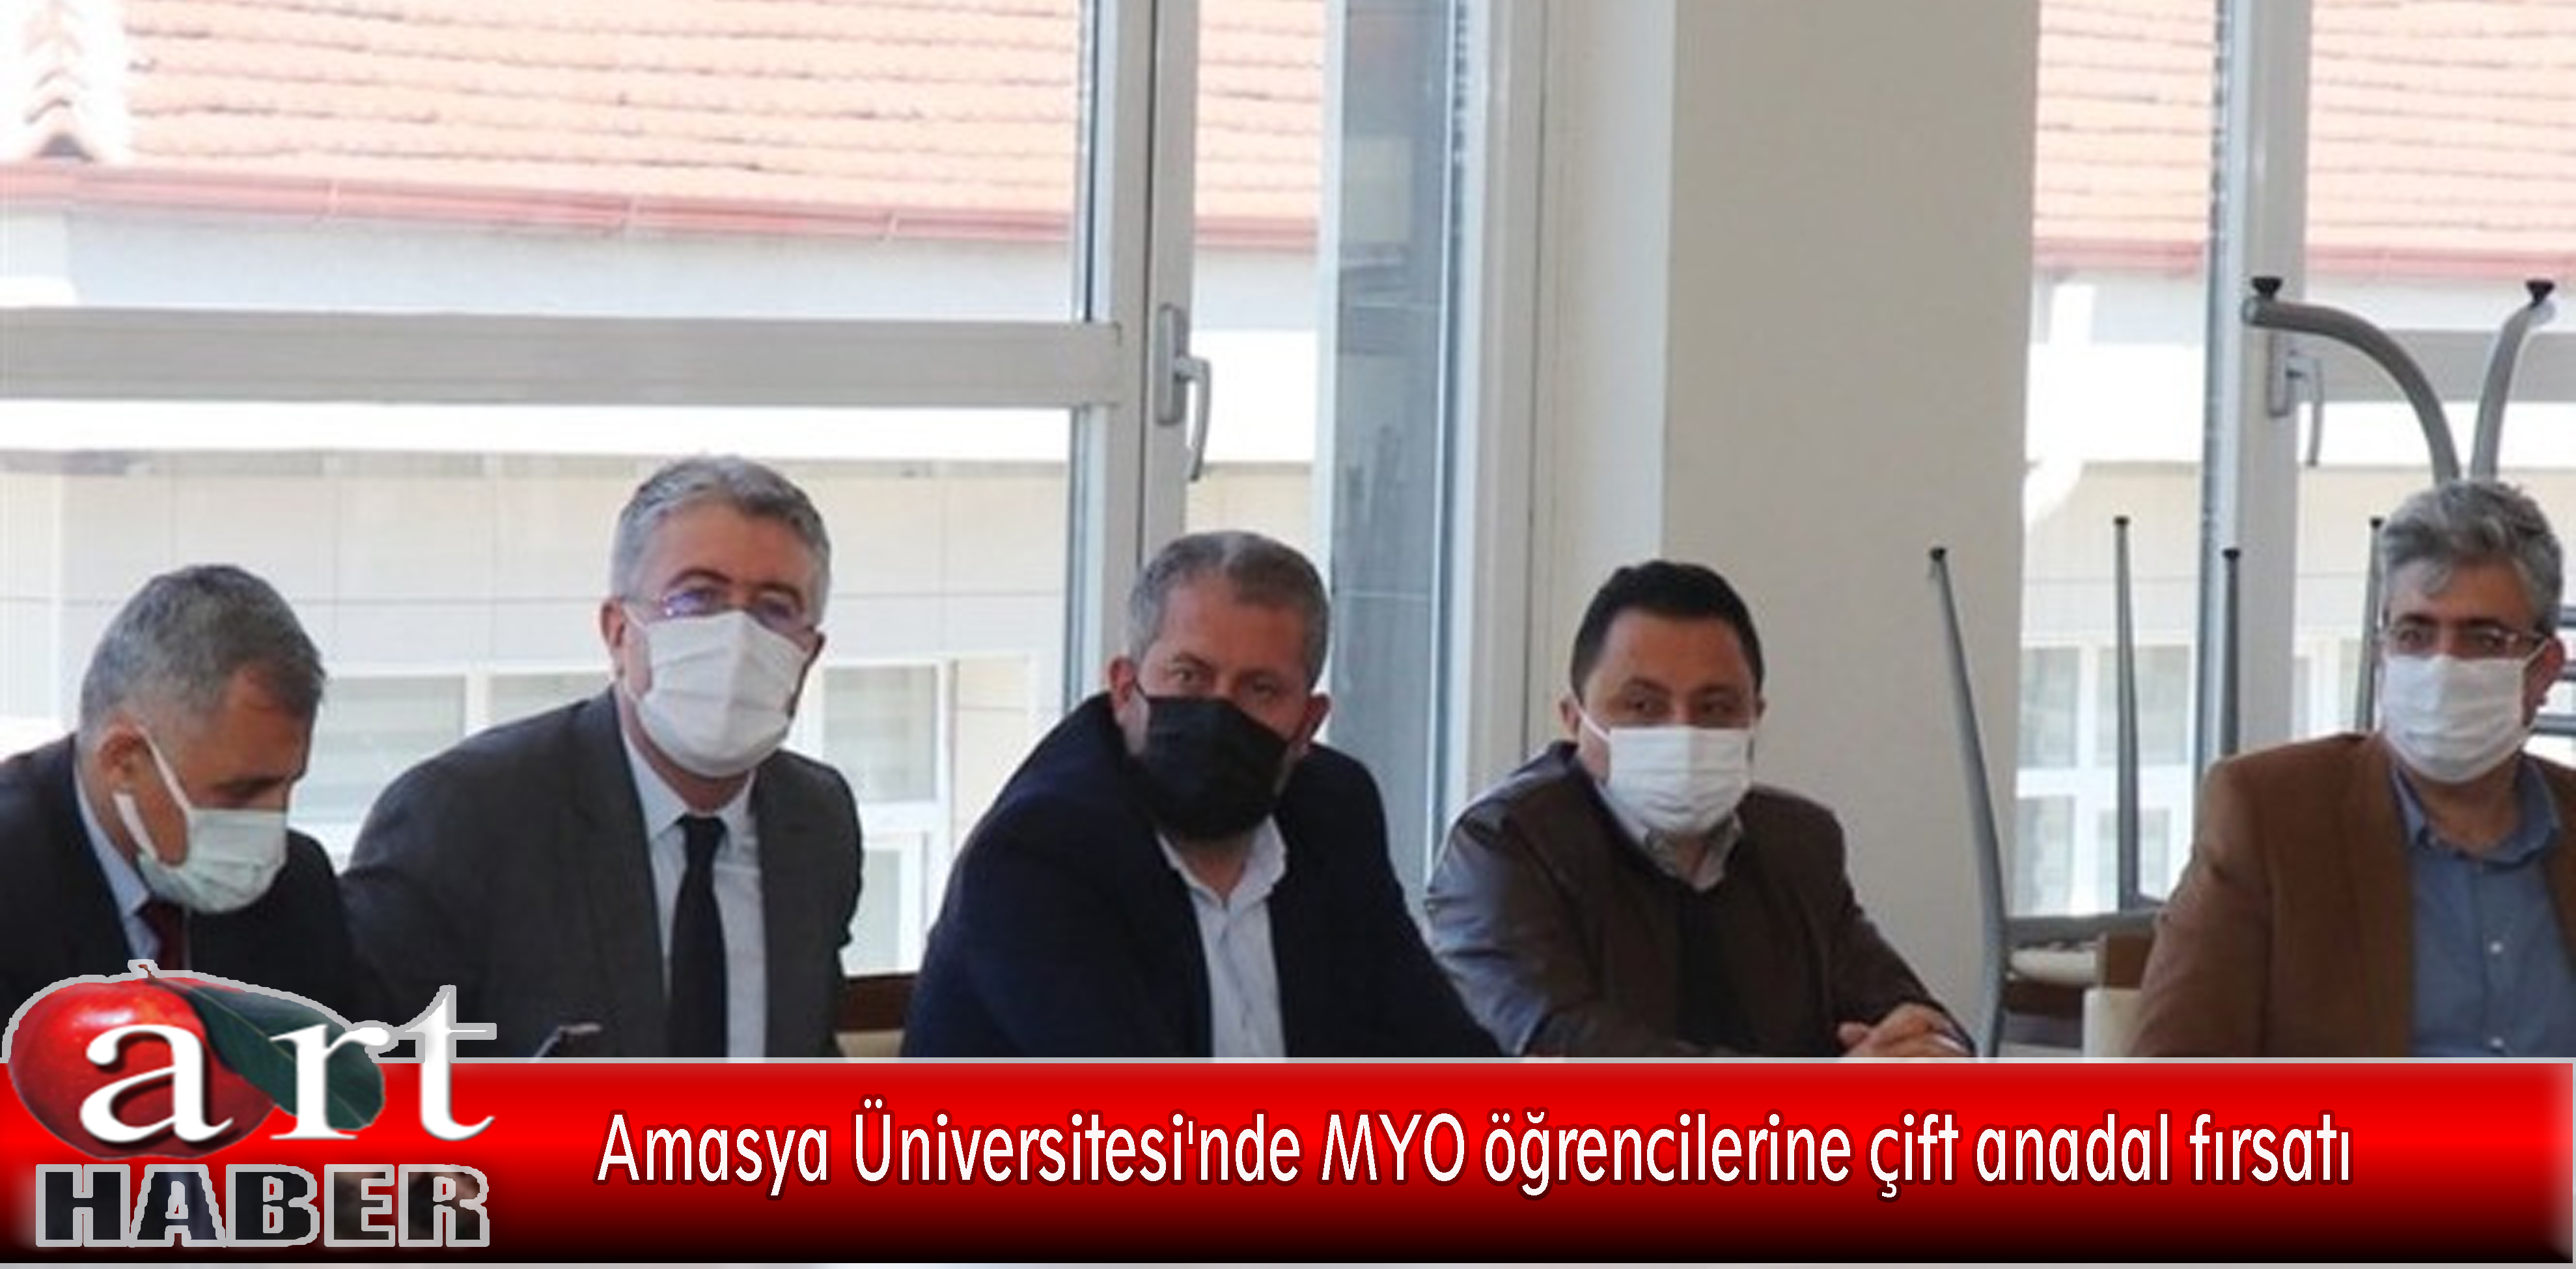 Amasya Üniversitesi’nde MYO öğrencilerine çift anadal fırsatı